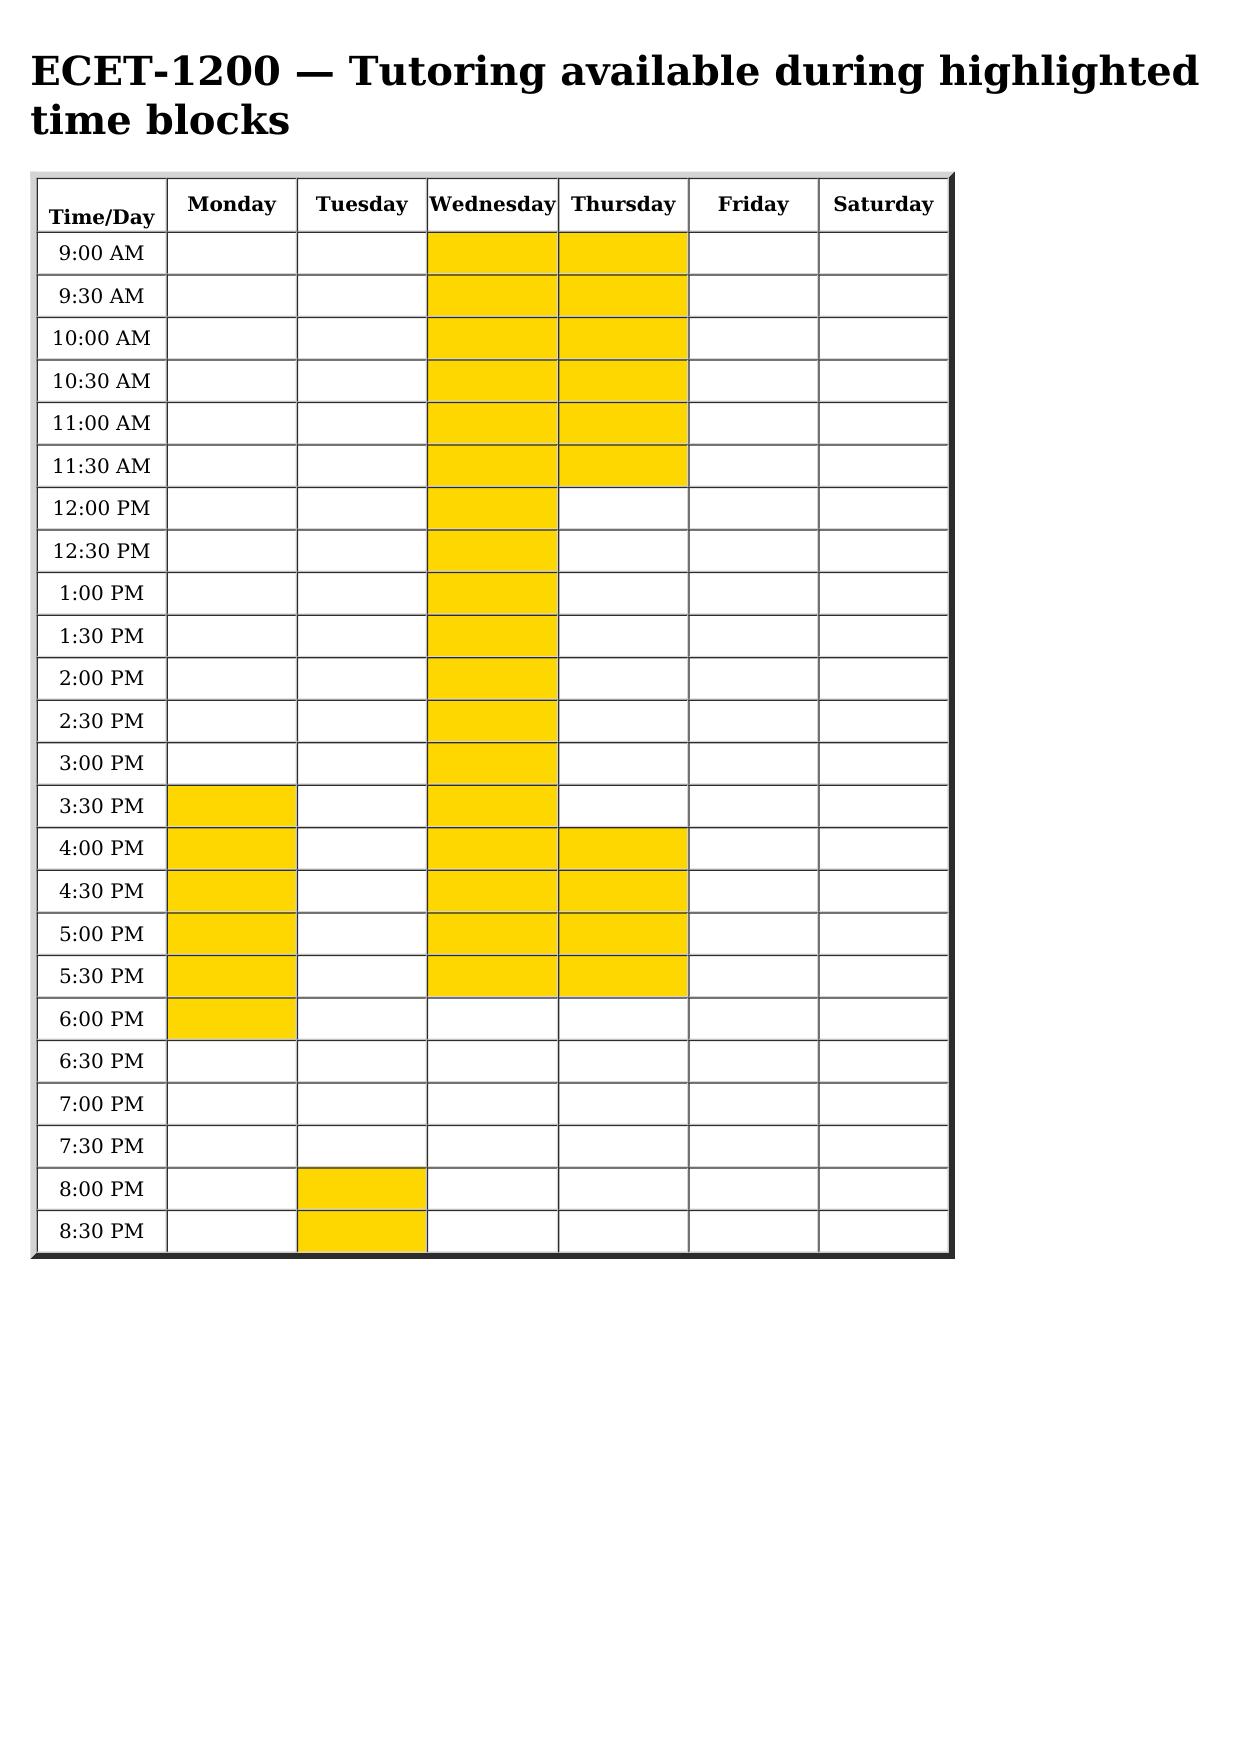 ecet 1200 schedule